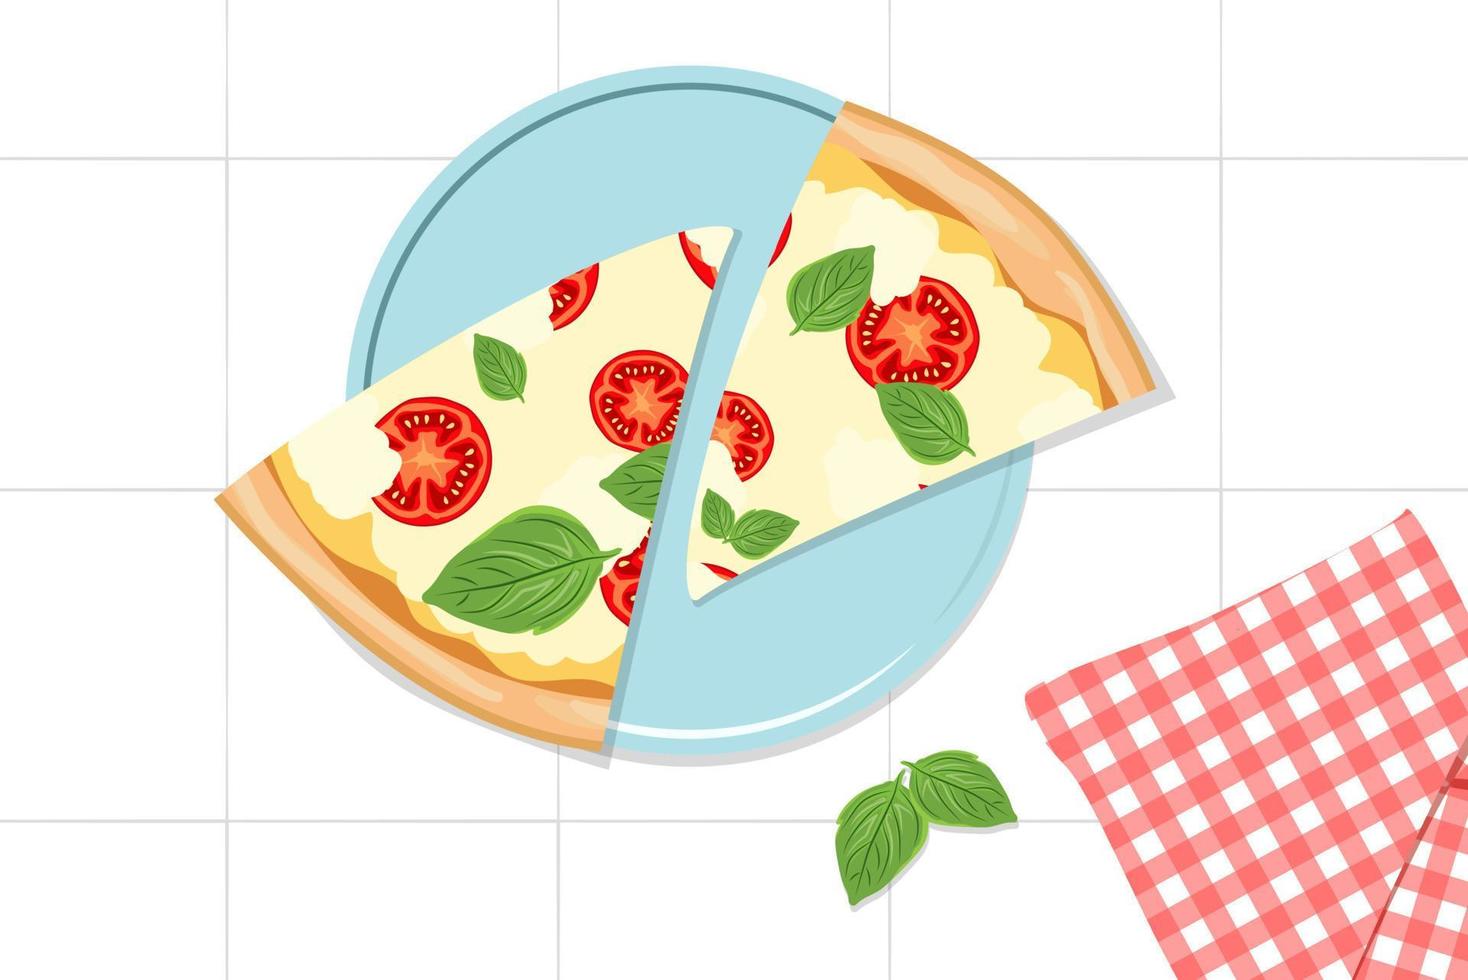 morceaux de pizza triangulaires. deux tranches de pizza margarita sur une assiette bleue et une serviette à carreaux rouge. cuisine italienne. poêle .prendre une collation de restauration rapide italienne traditionnelle. illustration vectorielle plane vecteur